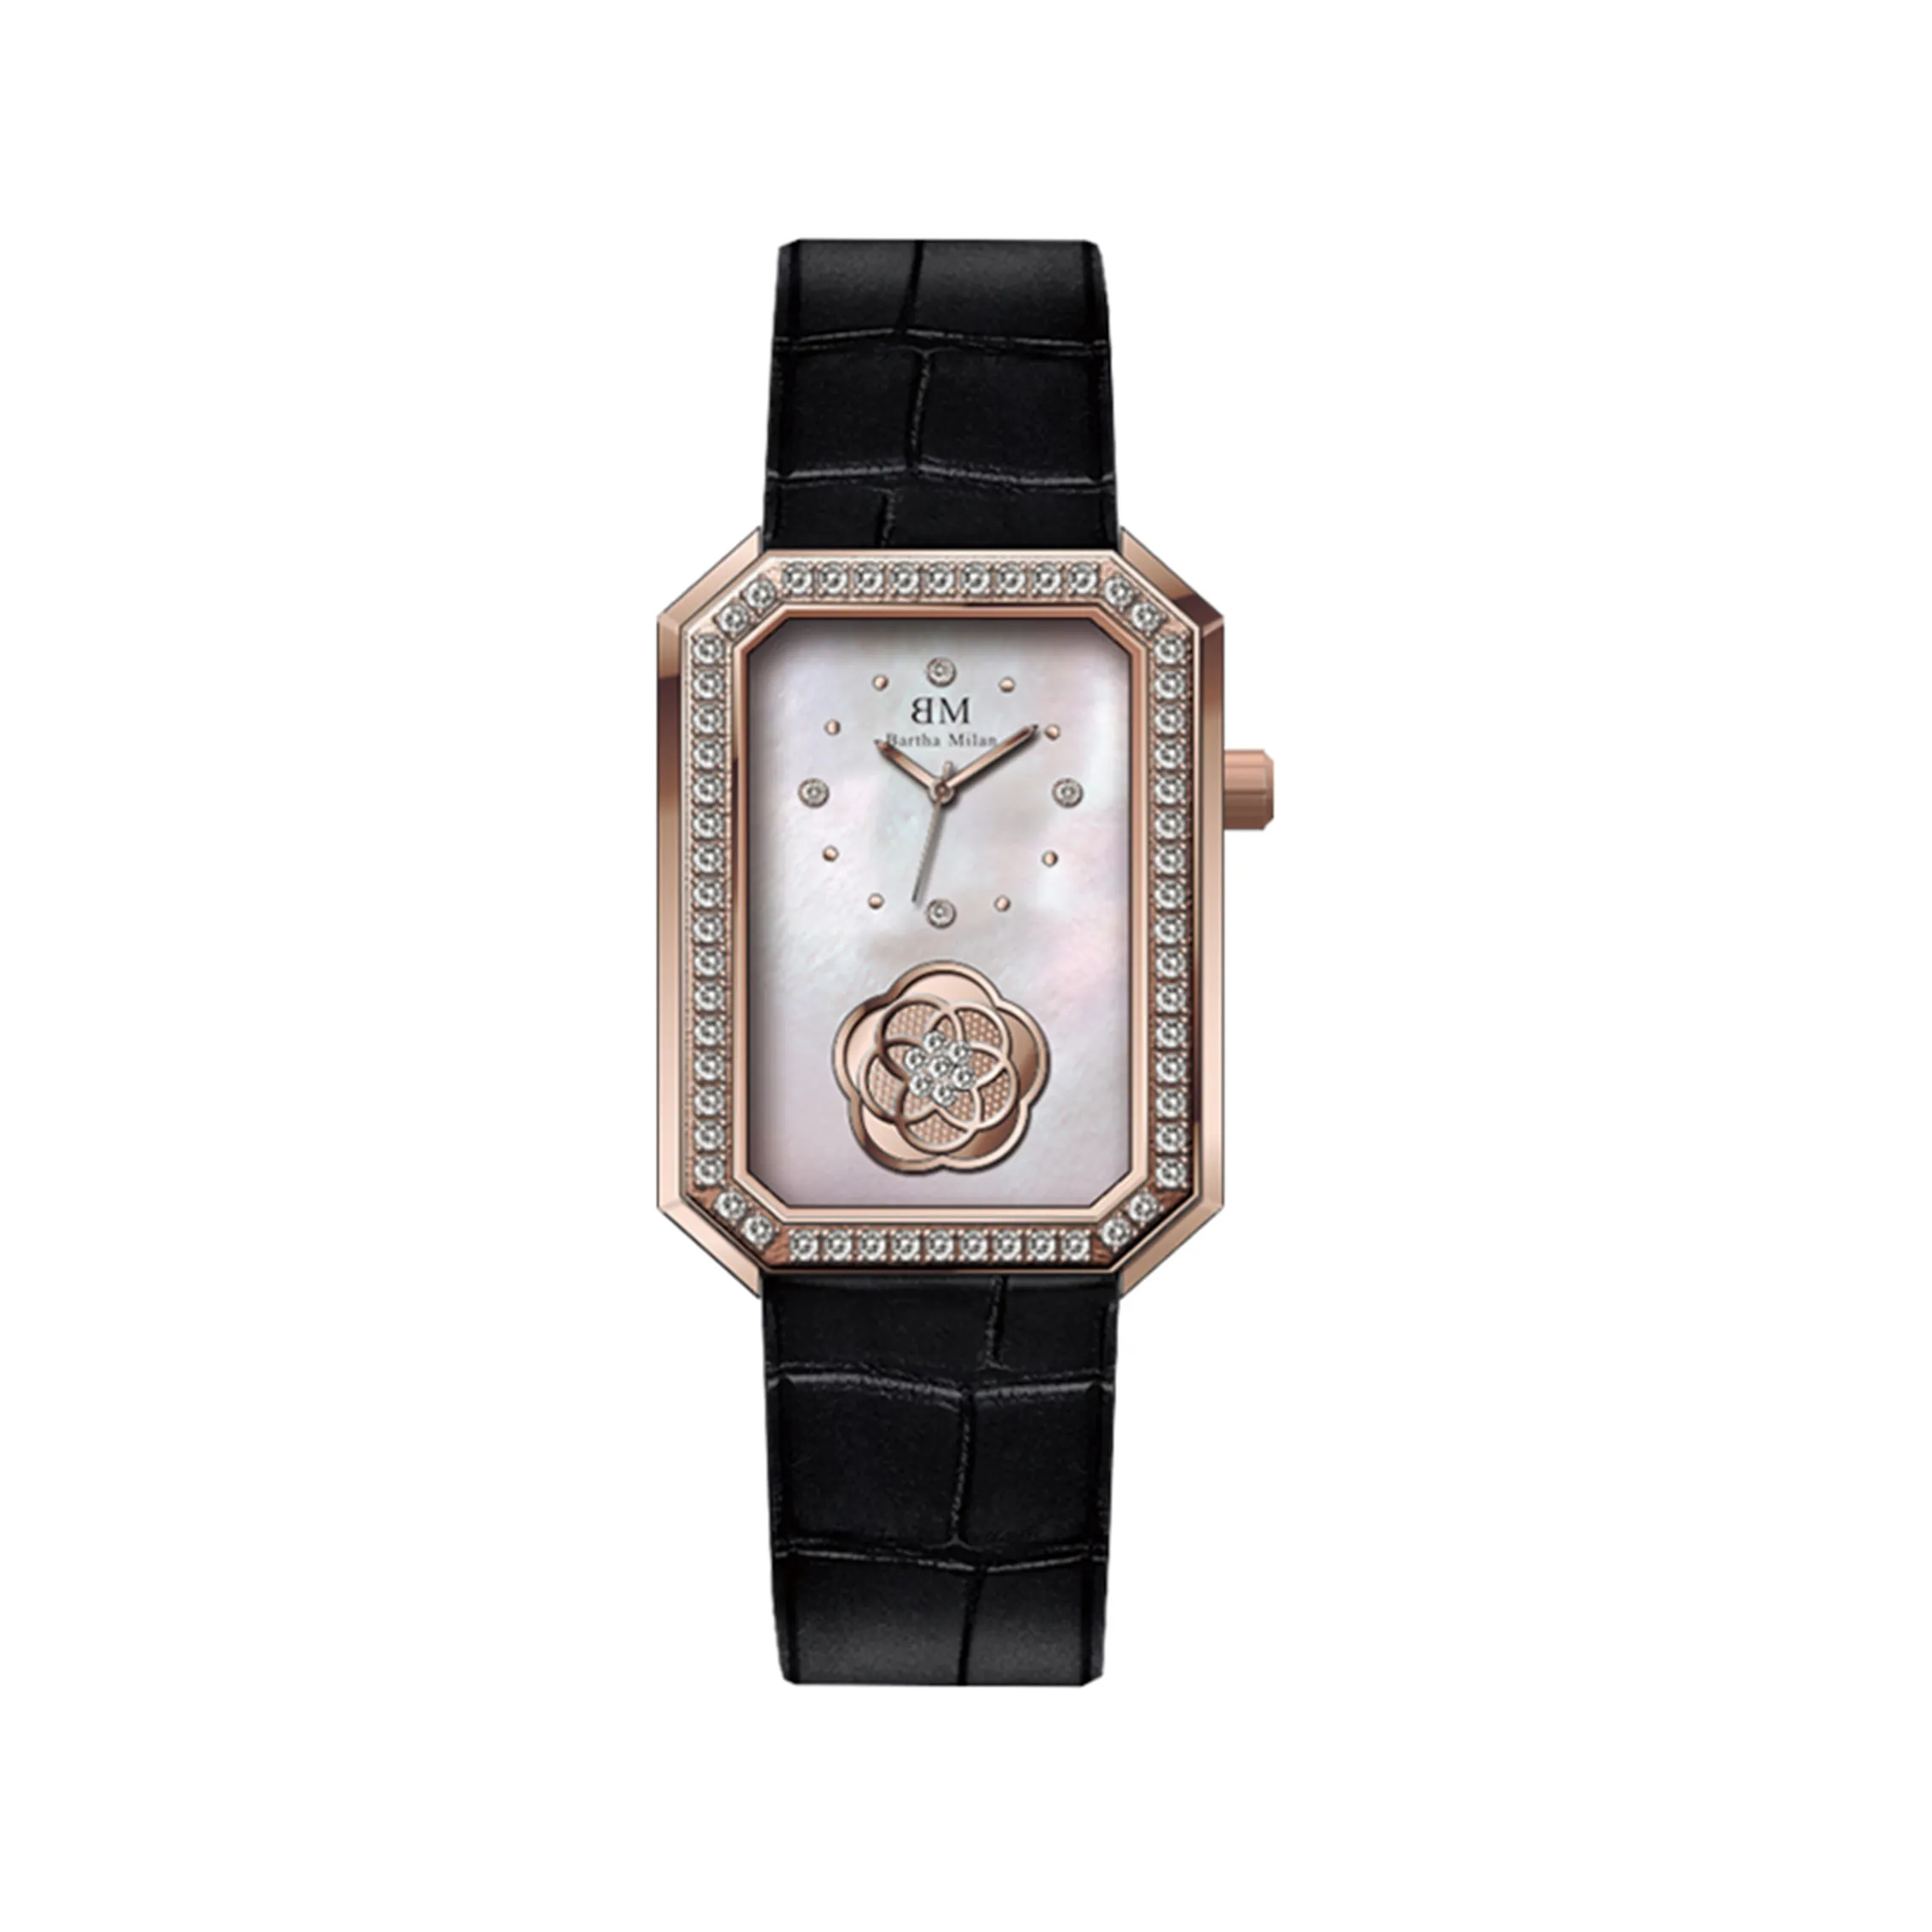 BM 8013 Luxury Women Watches Bracelet Wristwatches Fashion Ladies Quartz Watch Pink Female Clock Girl Gift Montre Femme Relogio